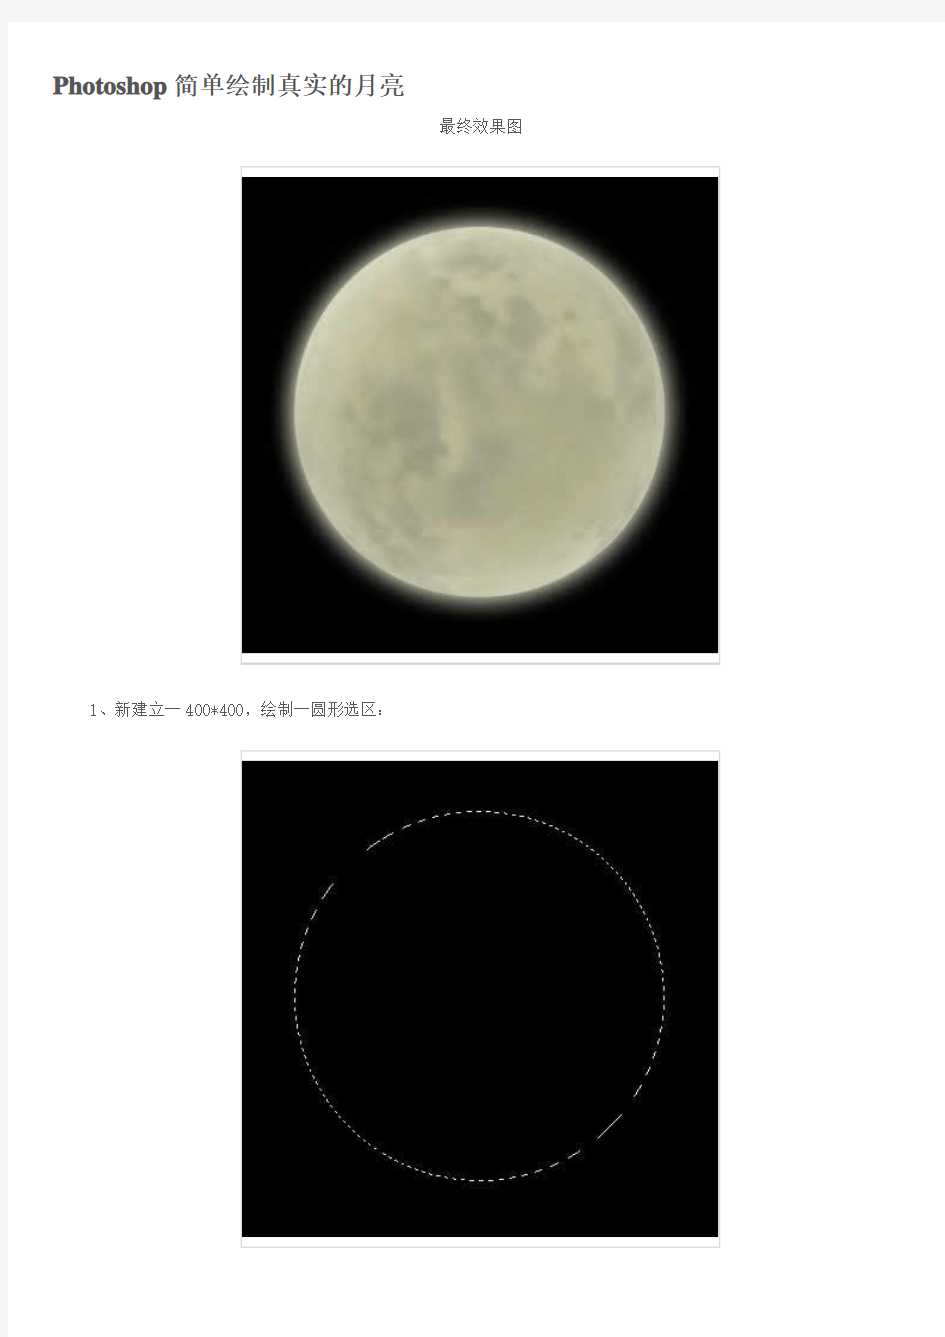 ps教程入门—Photoshop简单绘制真实的月亮